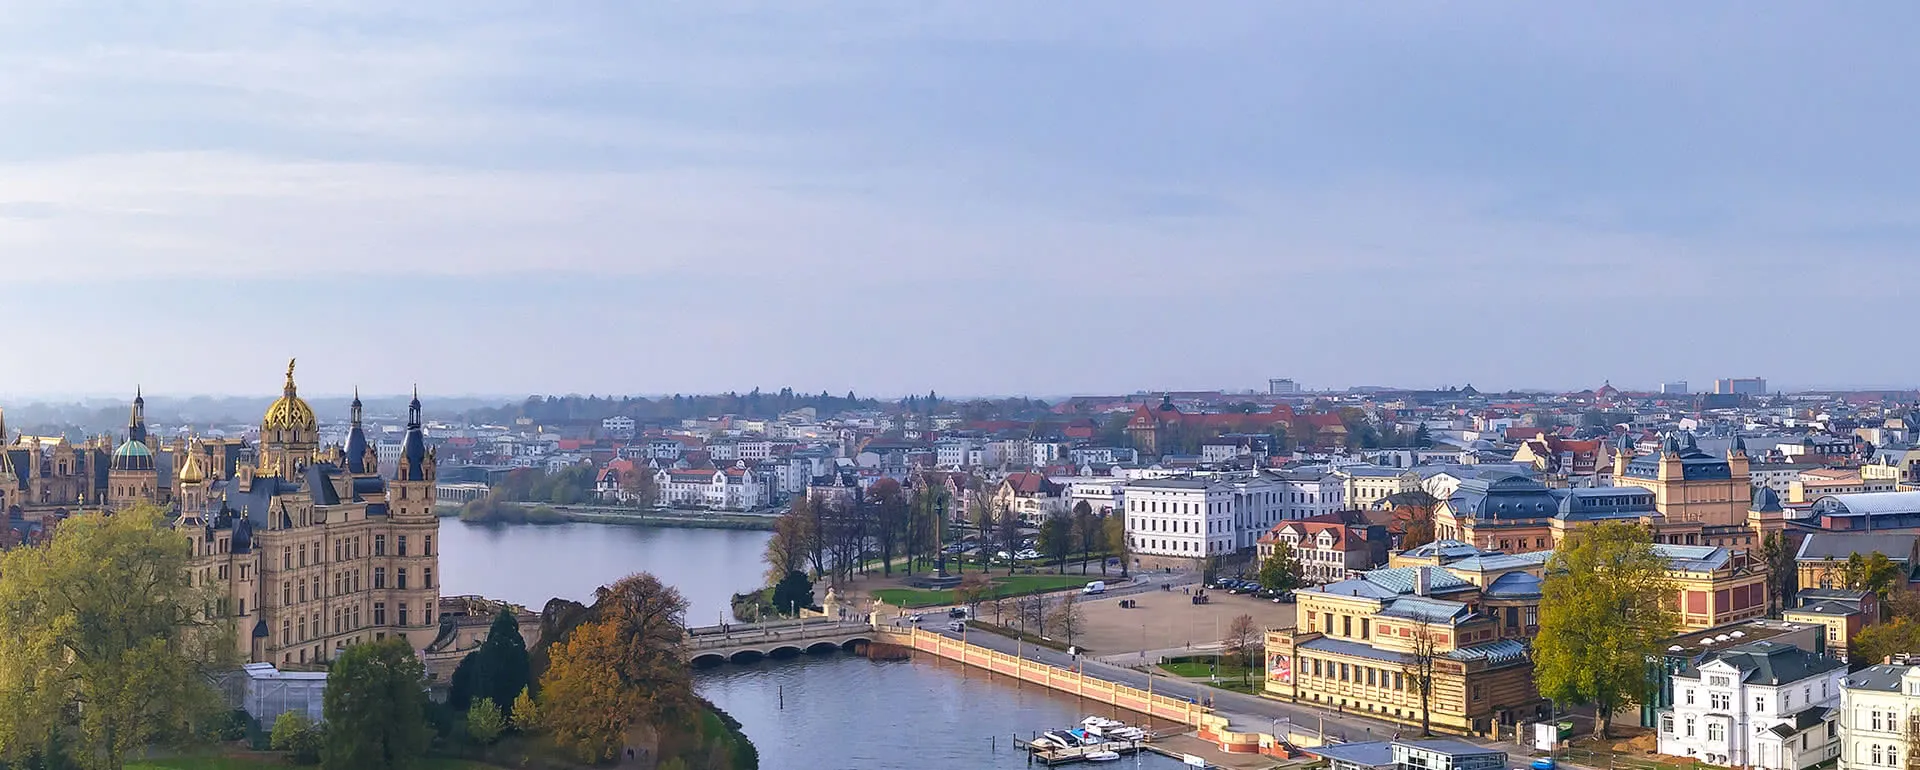 Schwerin panorama image